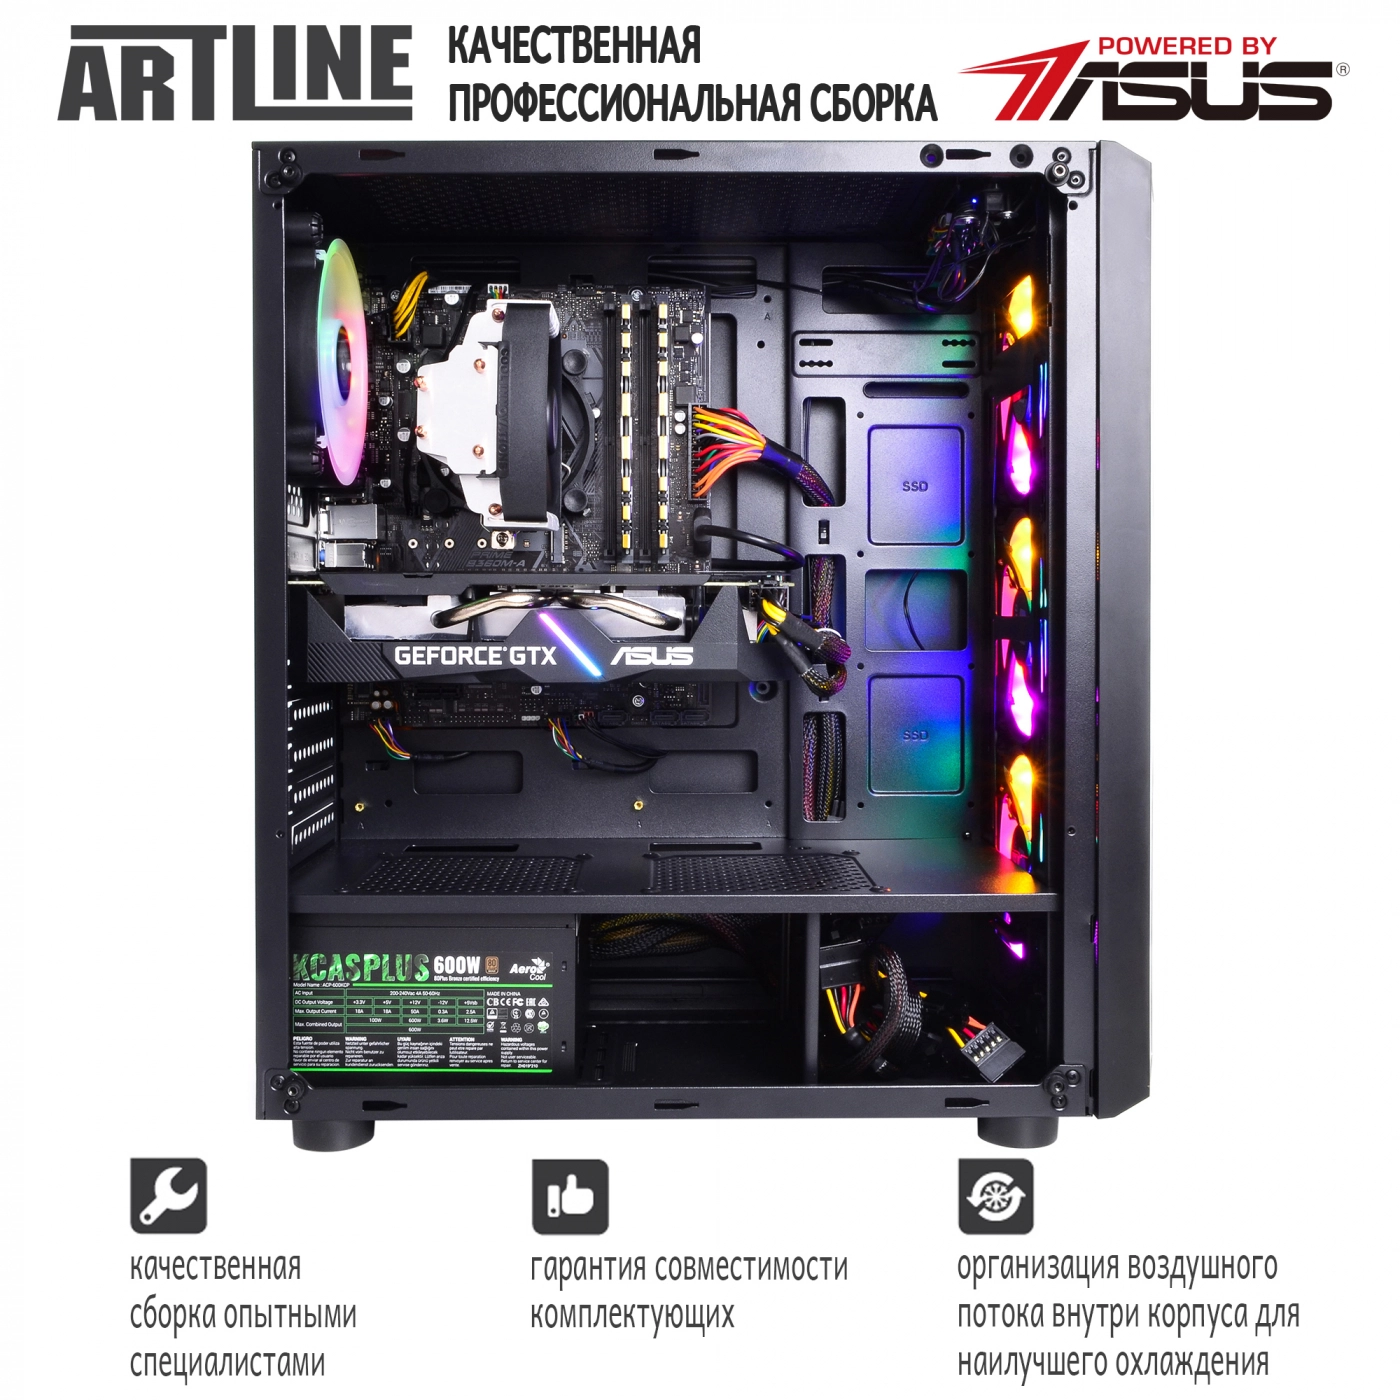 Купить Компьютер ARTLINE Gaming X53v10 - фото 9